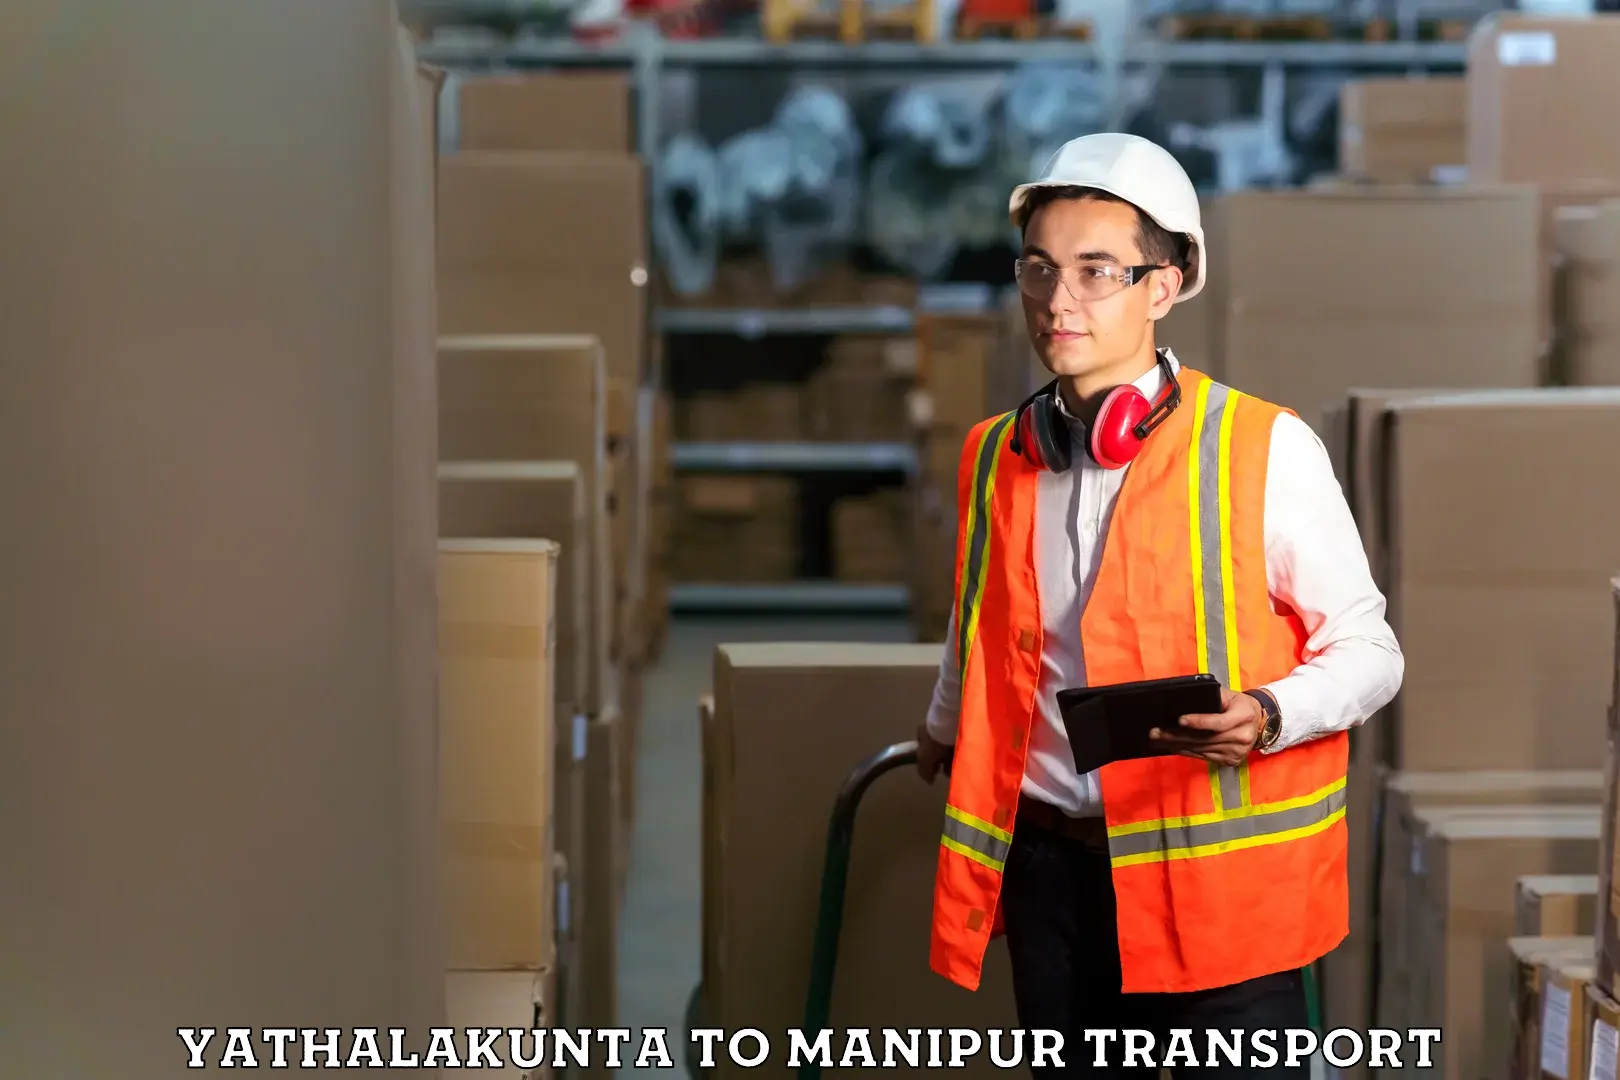 Furniture transport service Yathalakunta to Kanti